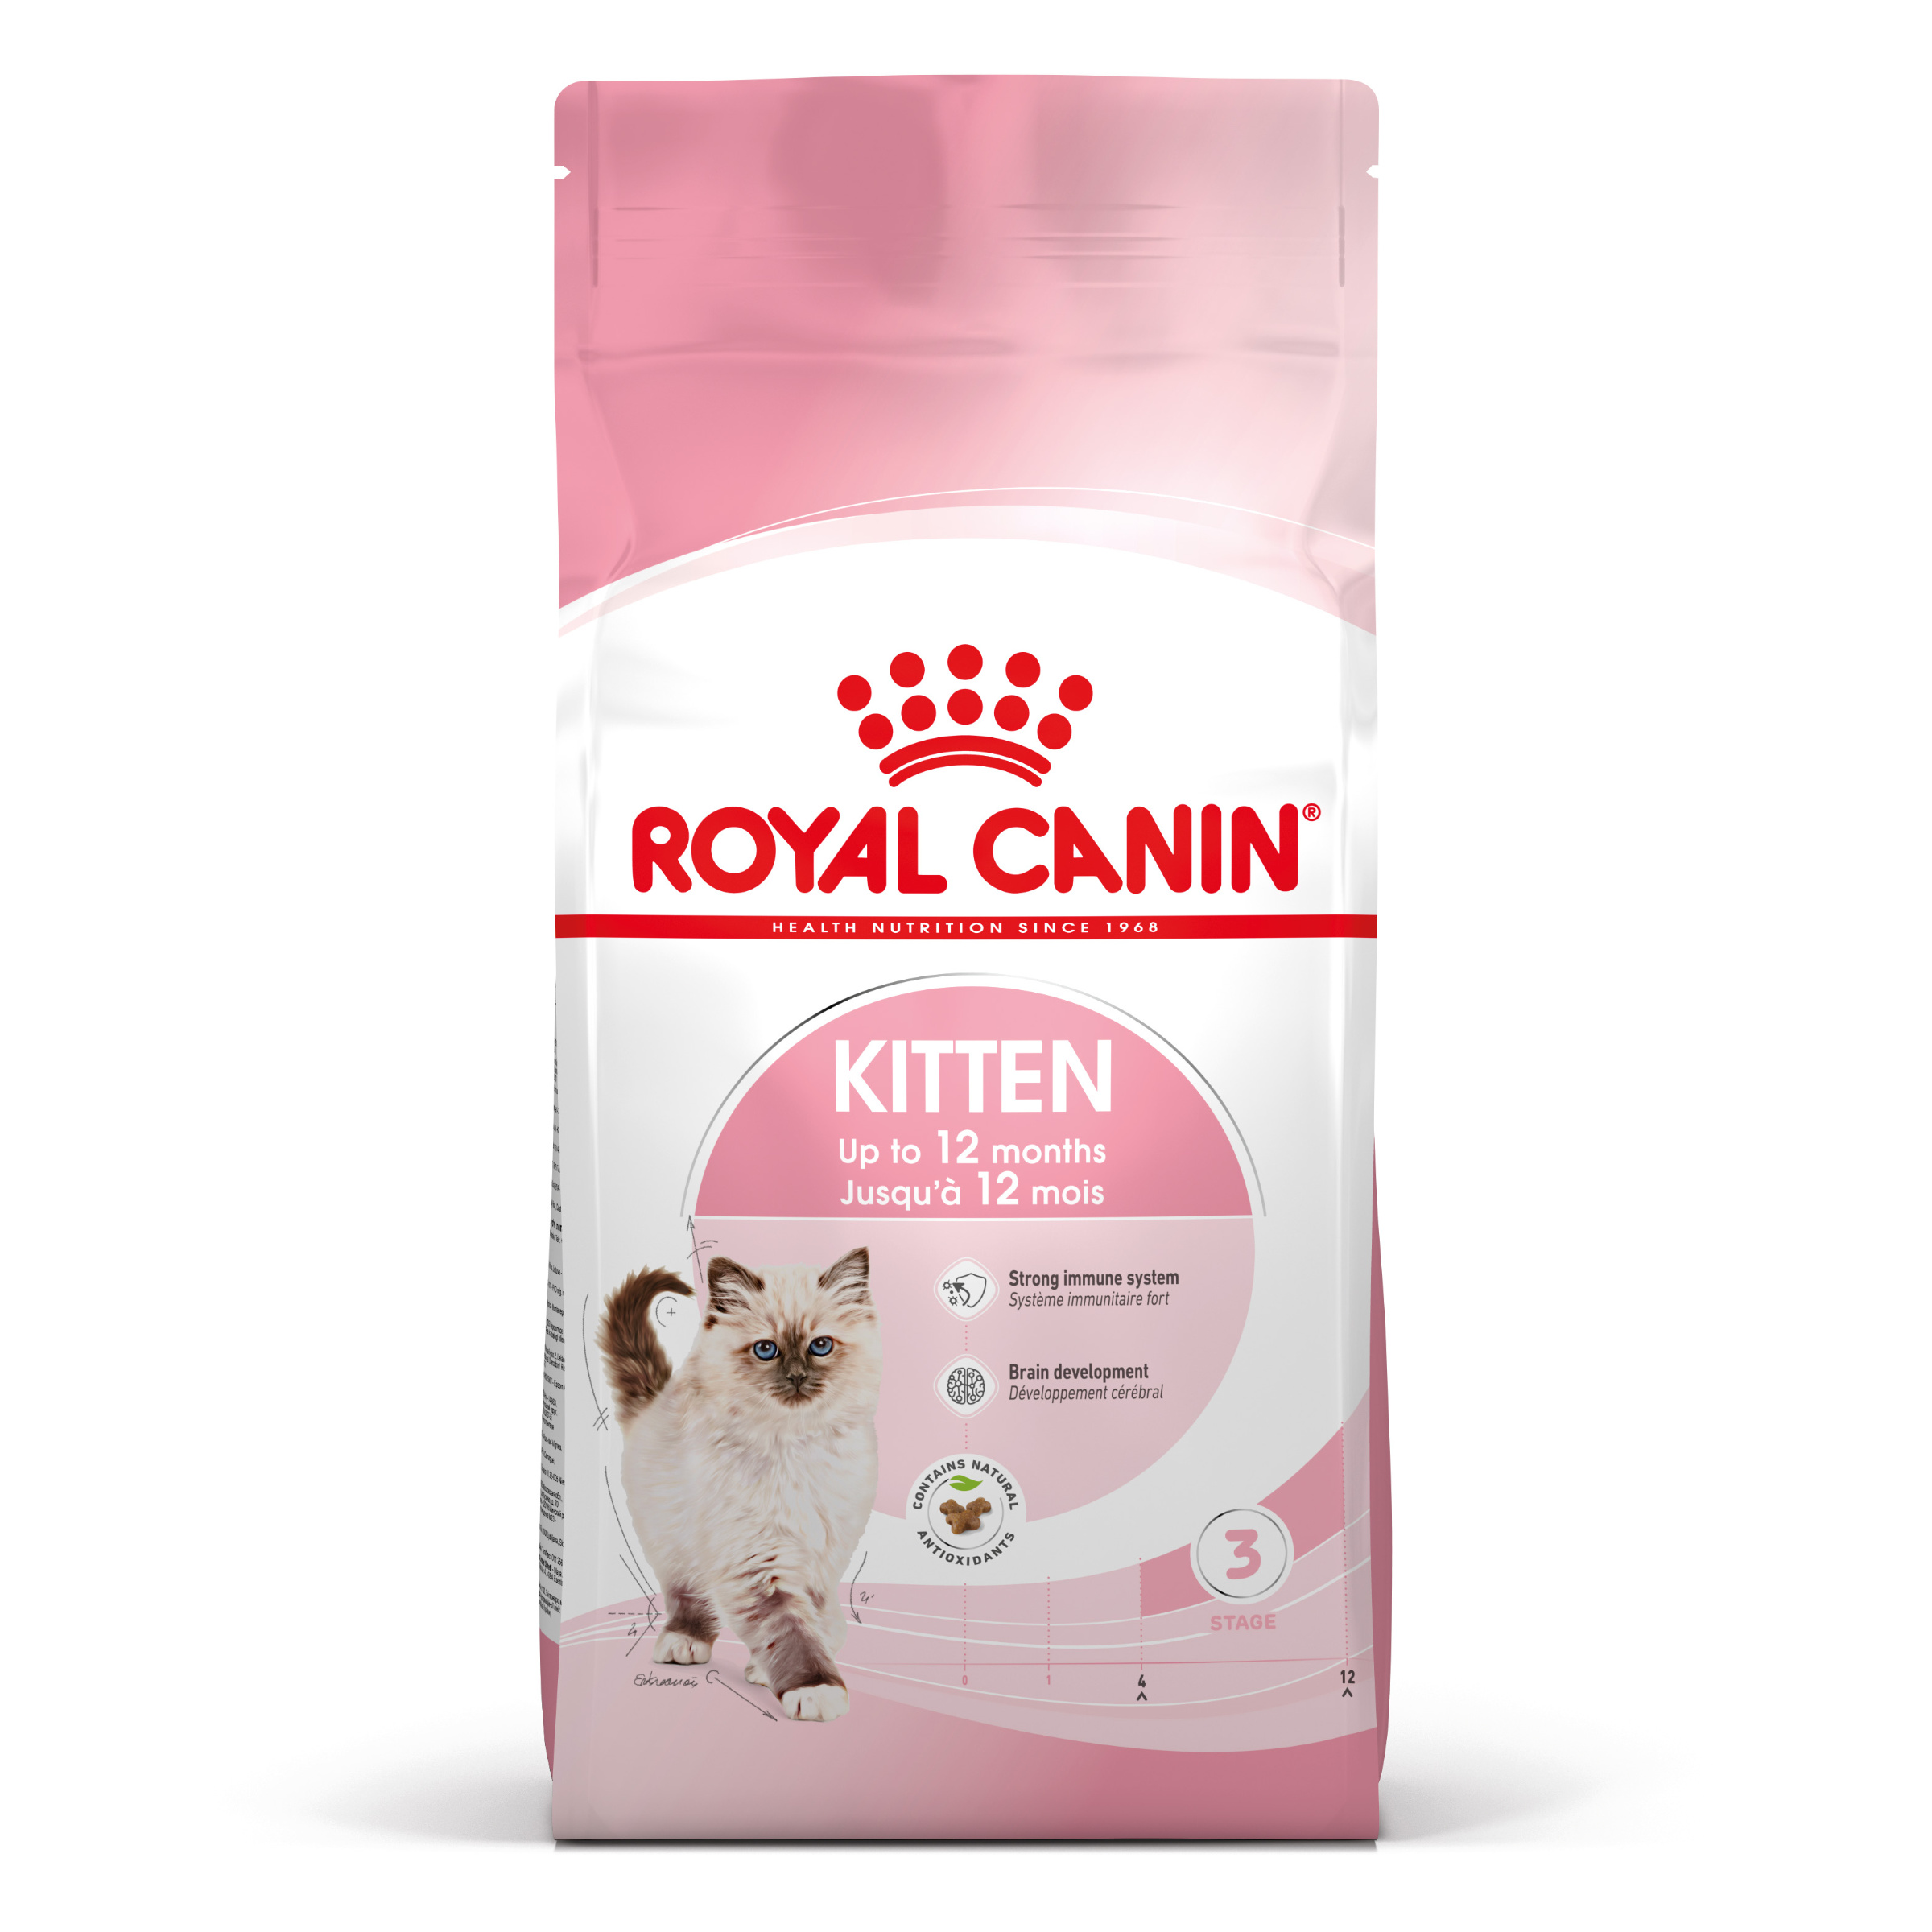 Royal Canin Kitten - Kattenvoer voor kittens in de tweede groeifase (tot 12 maanden) - 400g